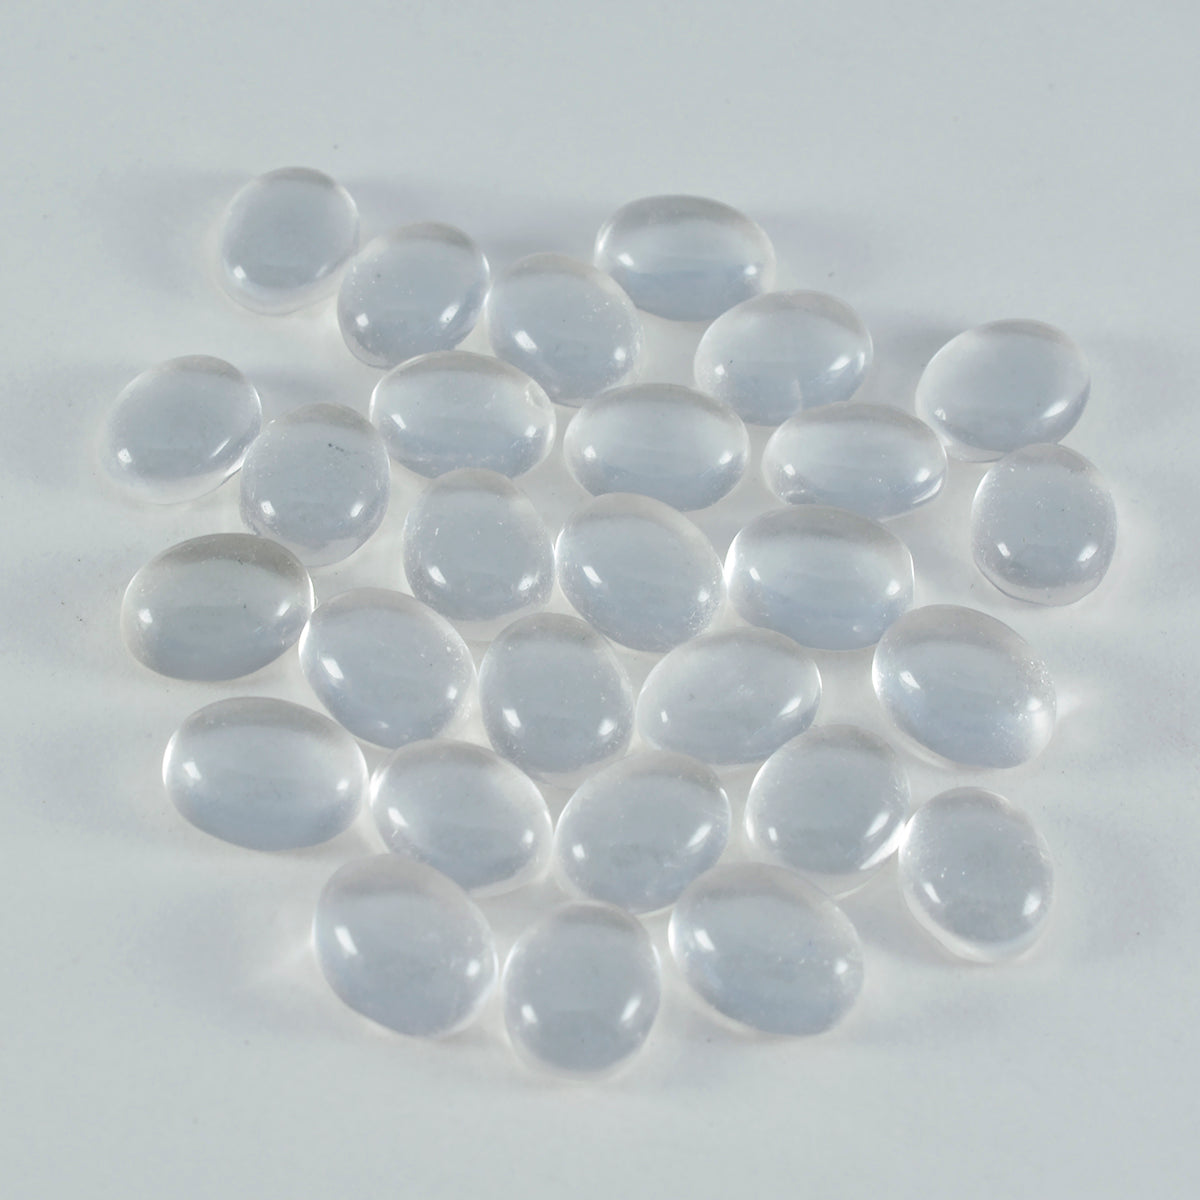 riyogems 1 шт., белый кристалл кварца, кабошон 6x8 мм, овальная форма, удивительный качество, свободный драгоценный камень